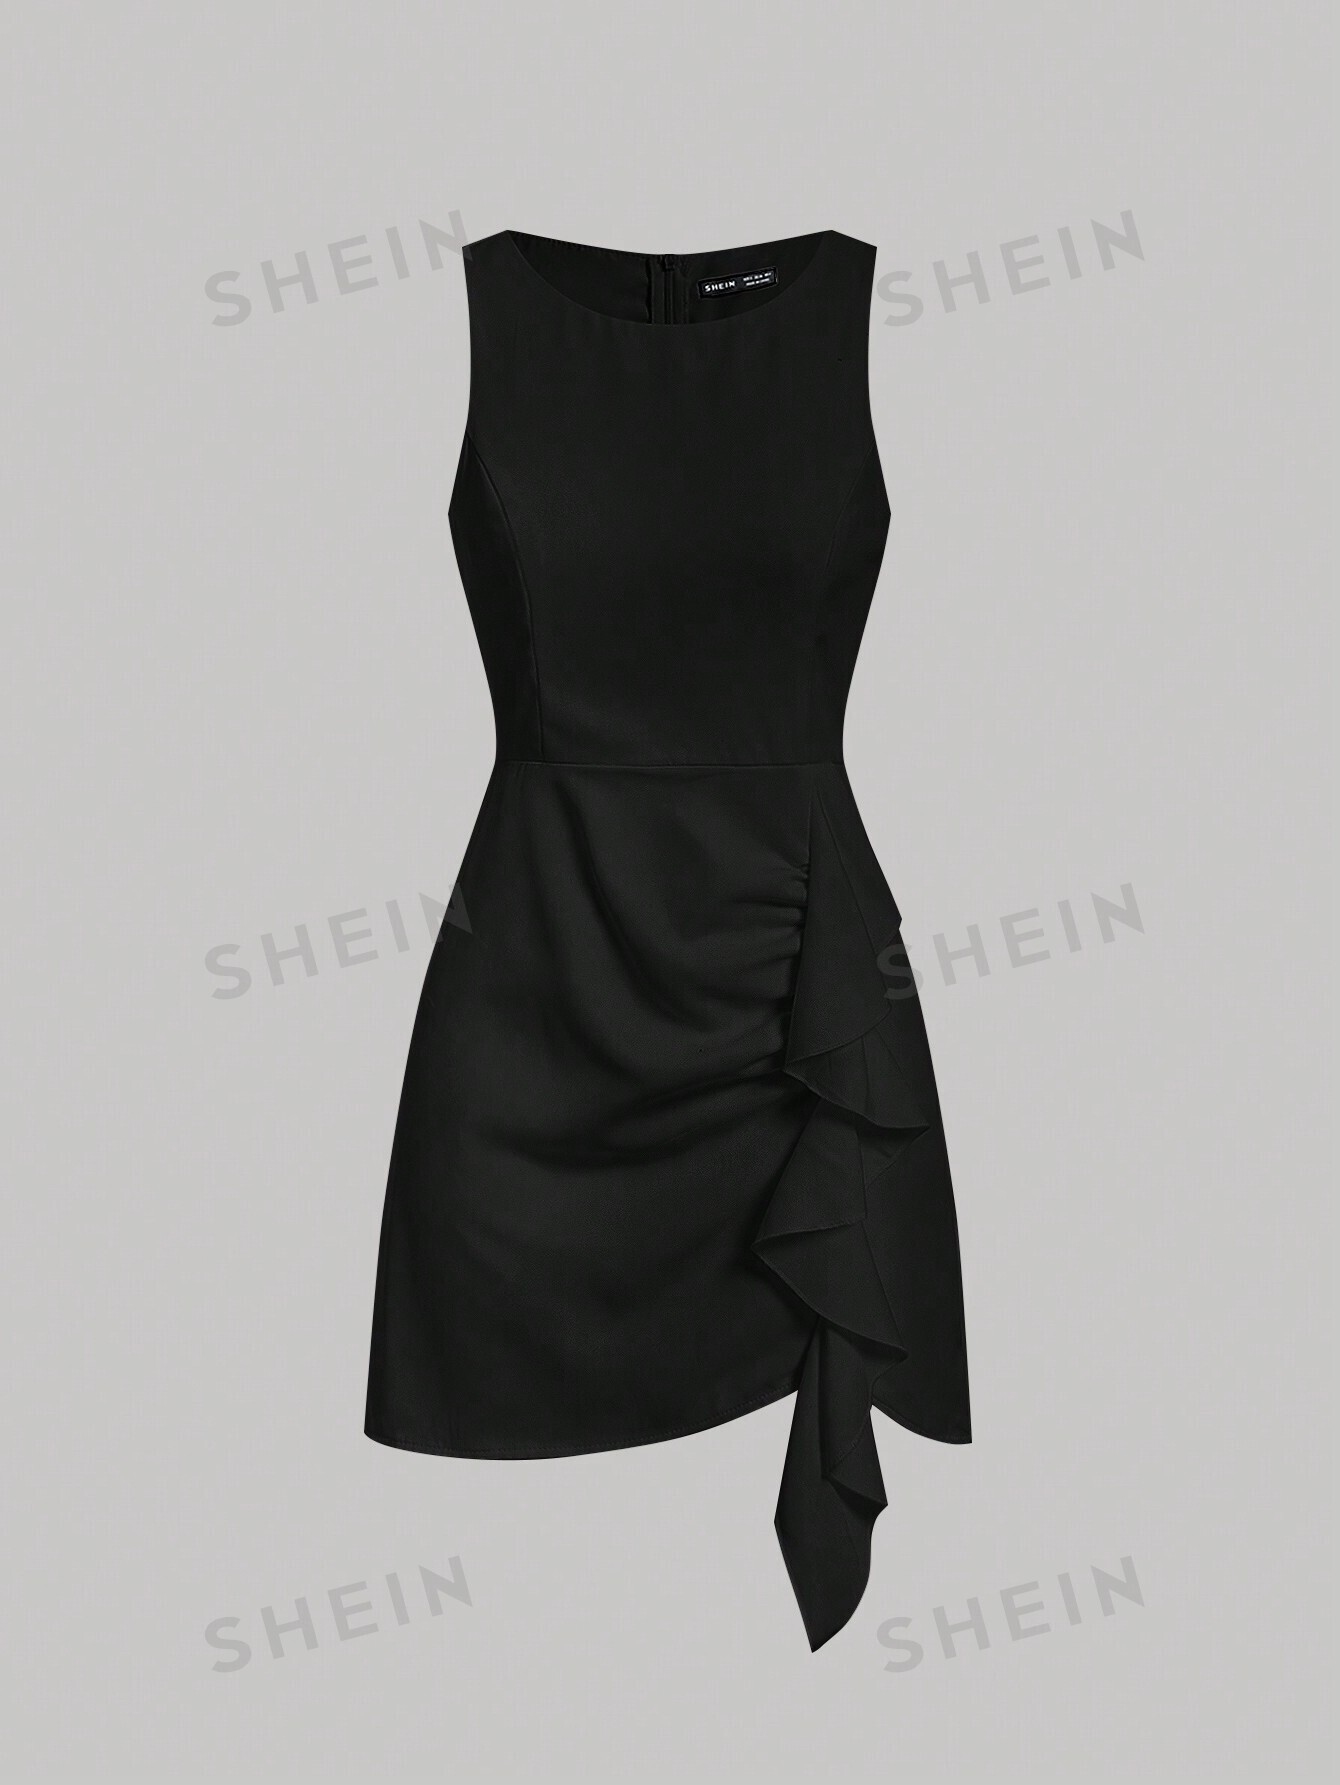 SHEIN MOD однотонное платье-жилет без рукавов с бретелькой на шее и рюшами, черный фотографии